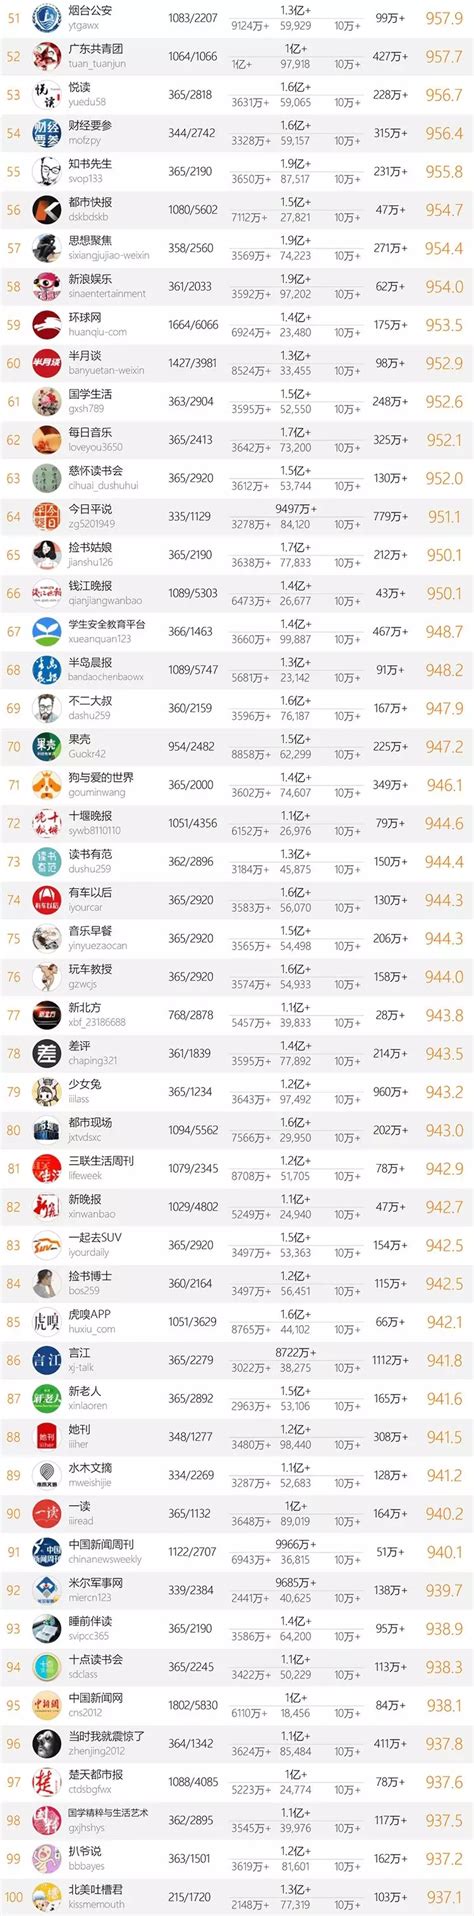 十大微信公众号排名榜-2018中国微信500强排名榜(阅读量排序)_排行榜123网